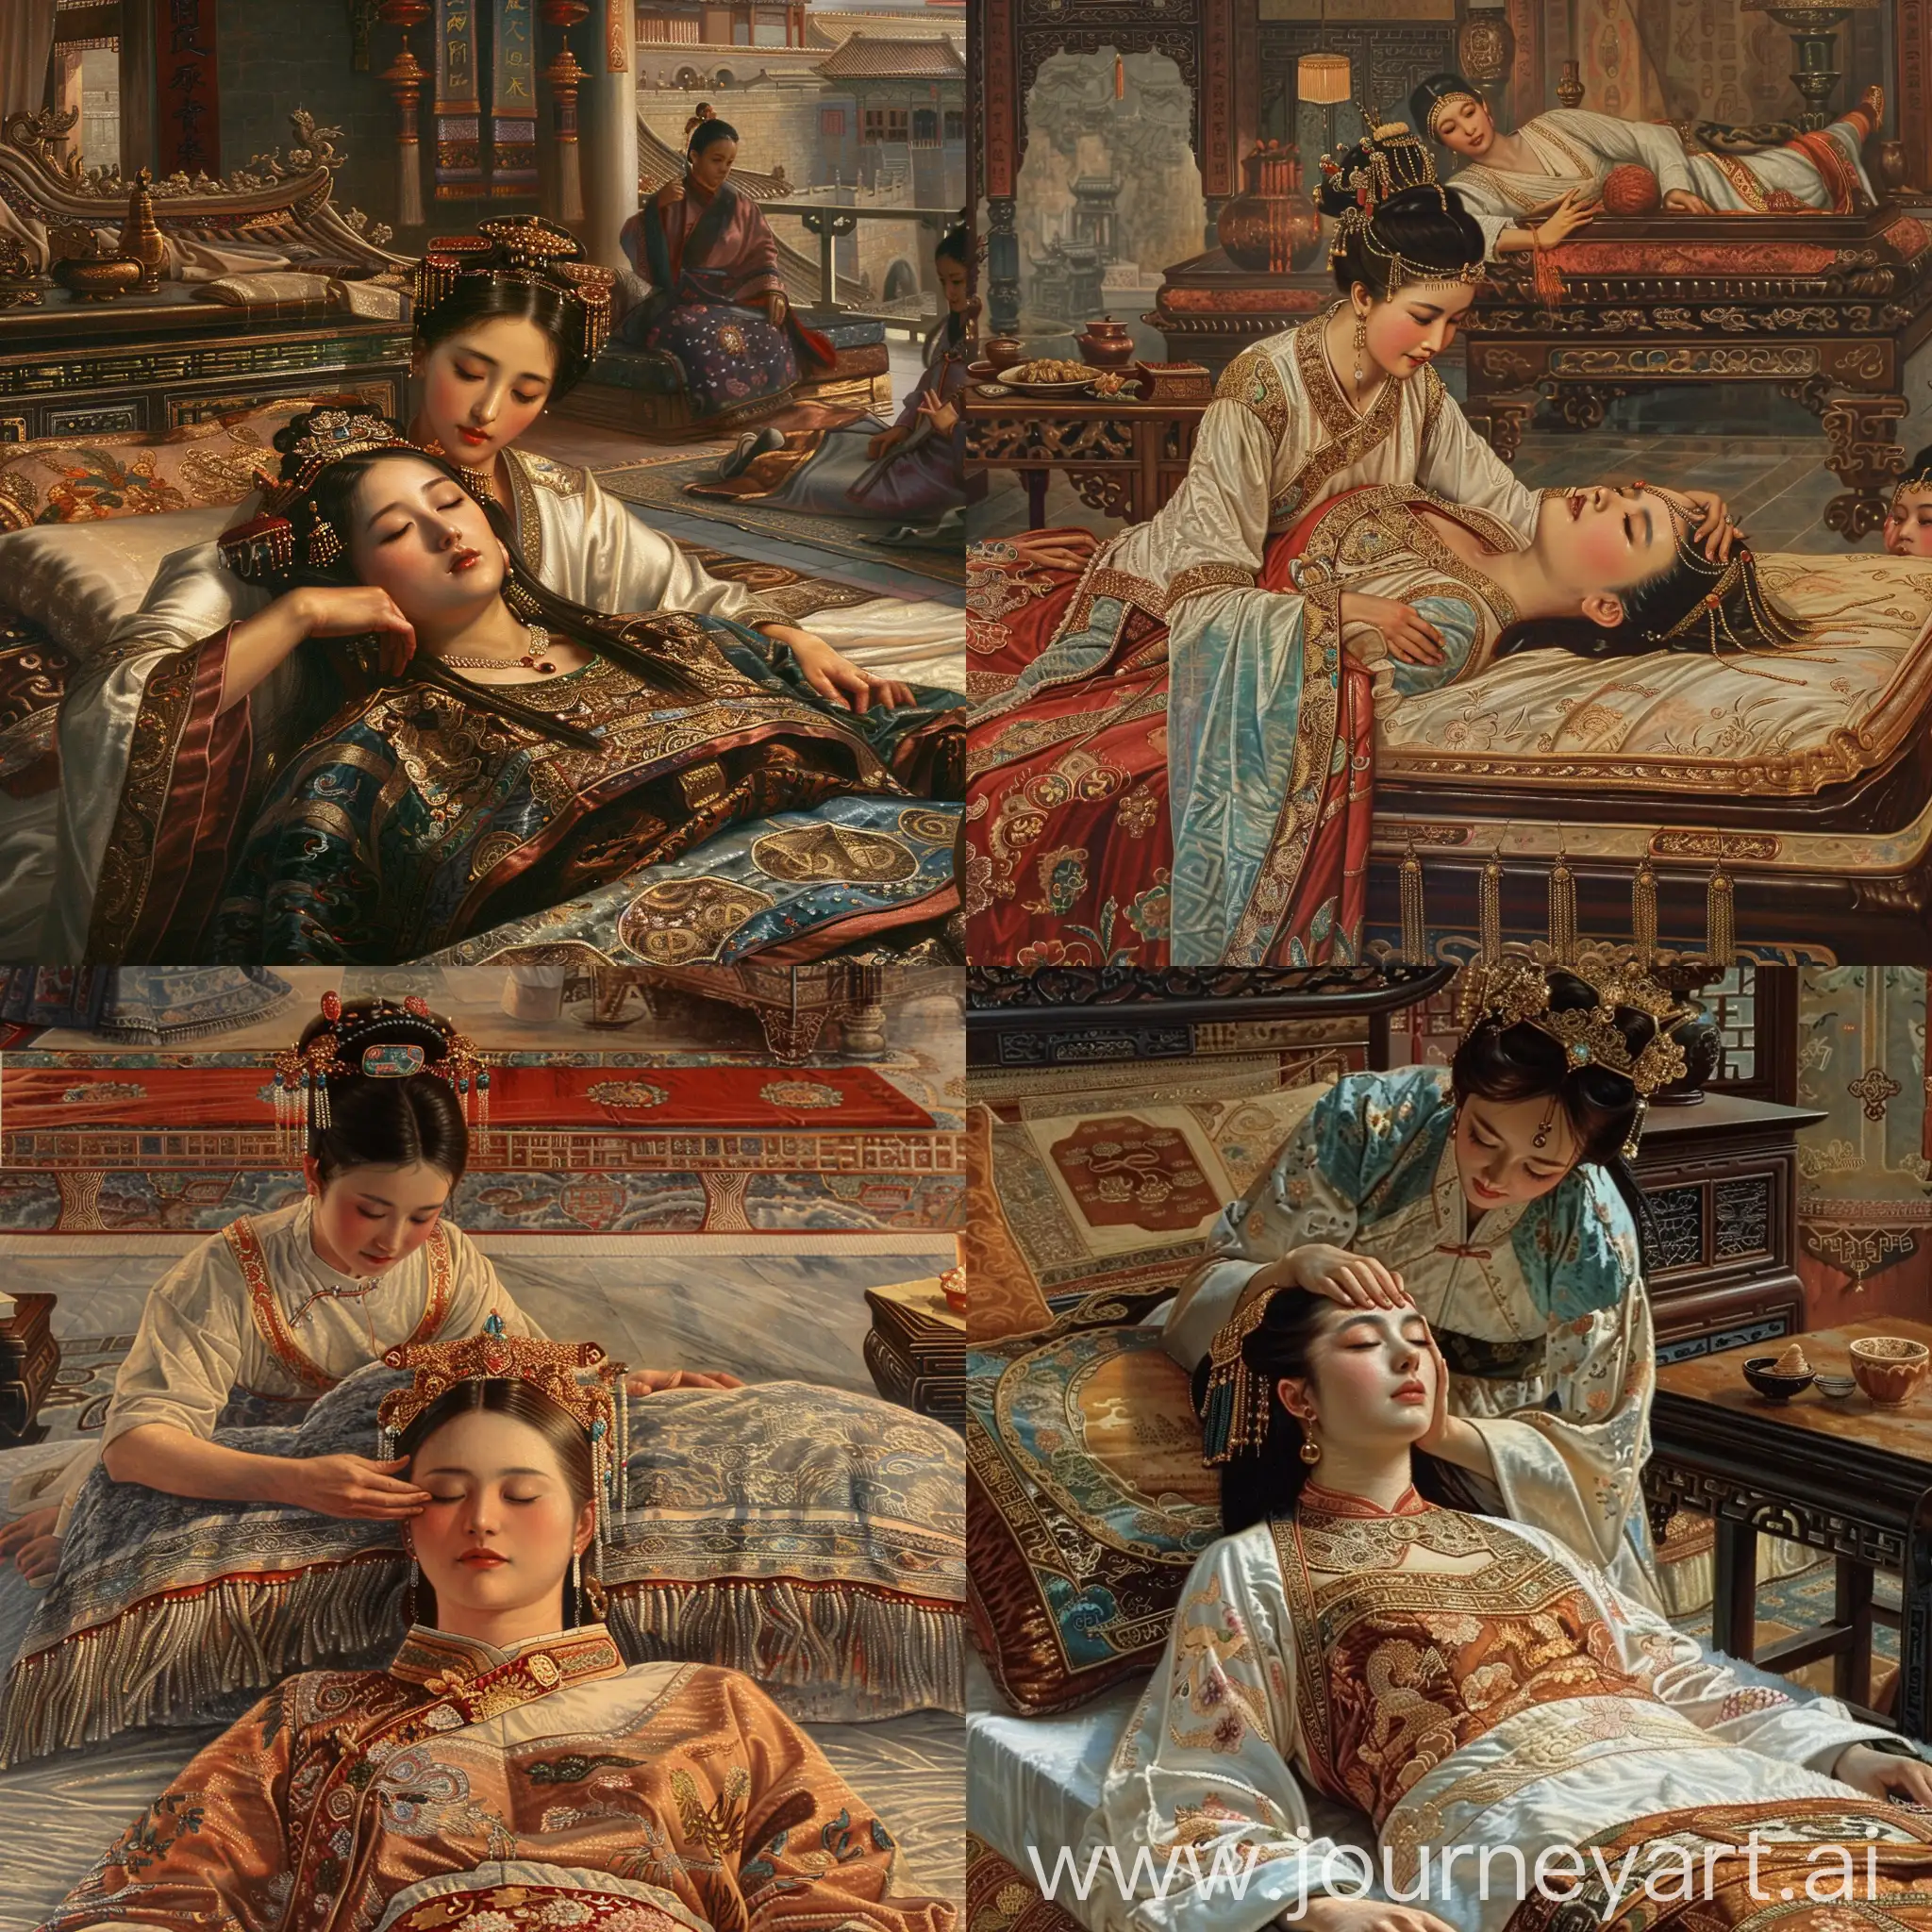 画侍女给奢侈的中国女皇按摩头部场景，女皇衣着世界上最豪华的衣服。平躺在华丽的床上。一个侍女在替她按摩头。古代，细节丰富，全景图，富丽堂皇，彩色